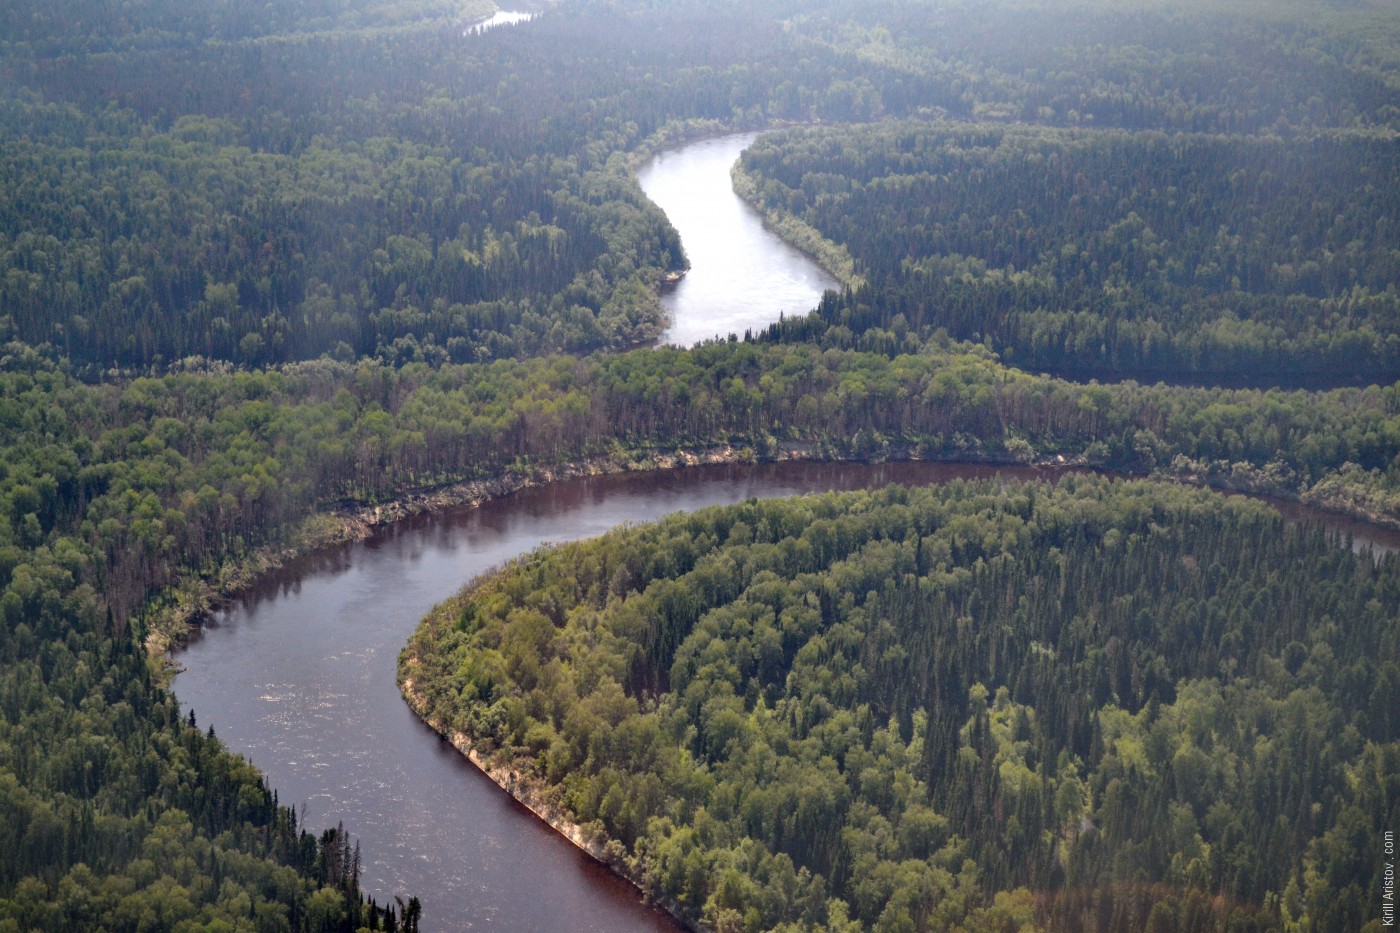 Два меандра, близко подходящие друг к другу, Location: Река Демьянка. Уватский район, Тюменская область, Россия.